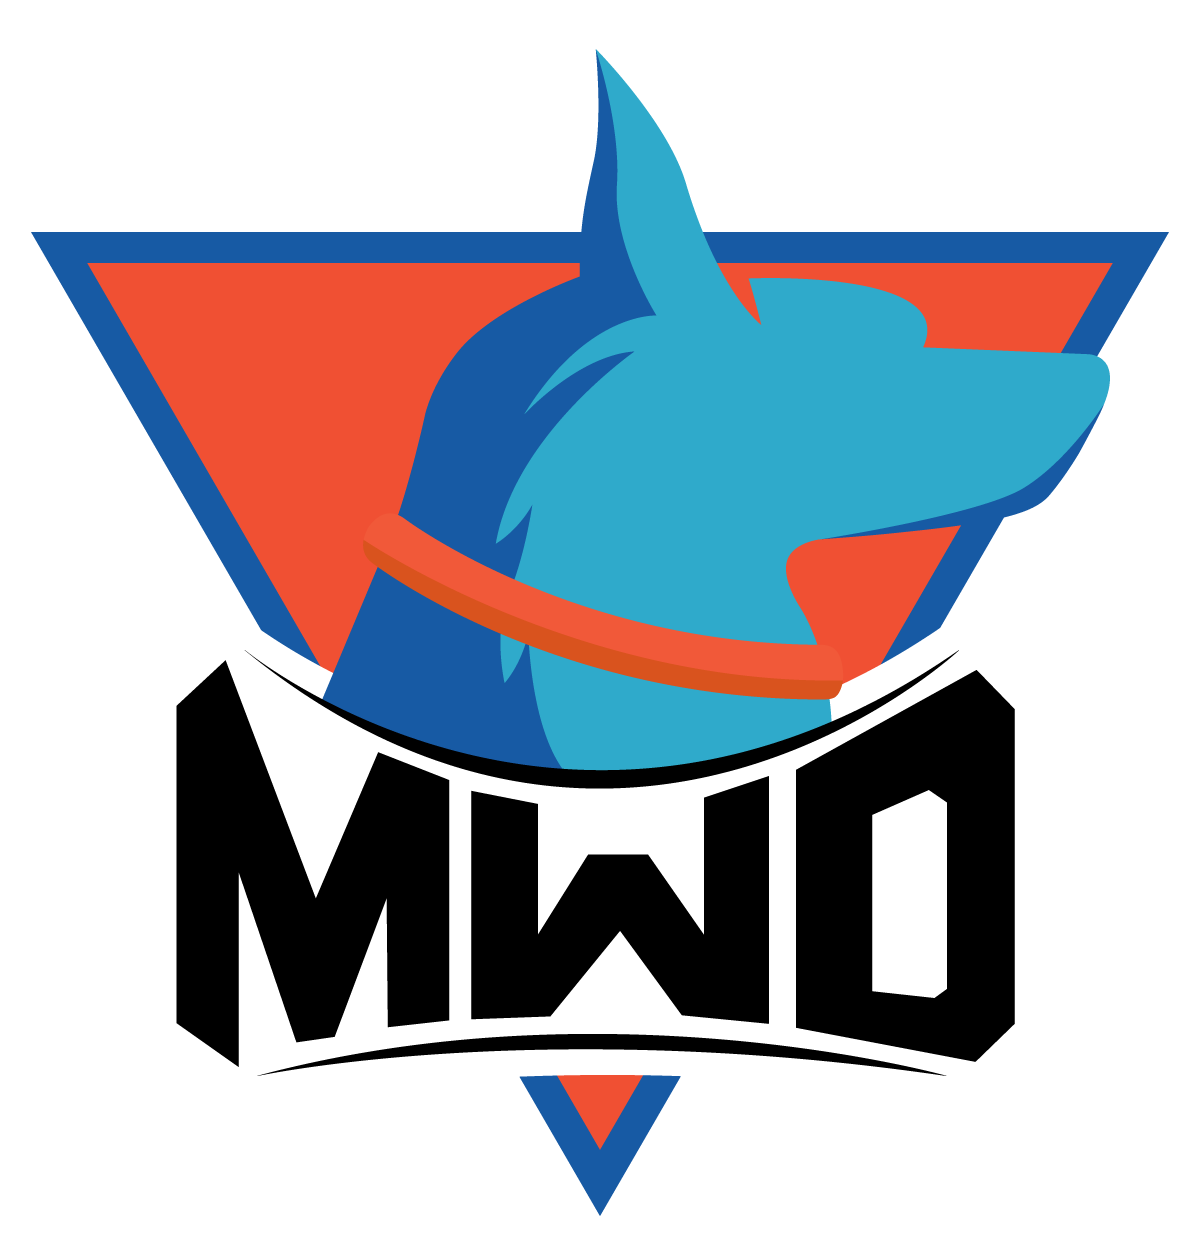 MWD_logo.png